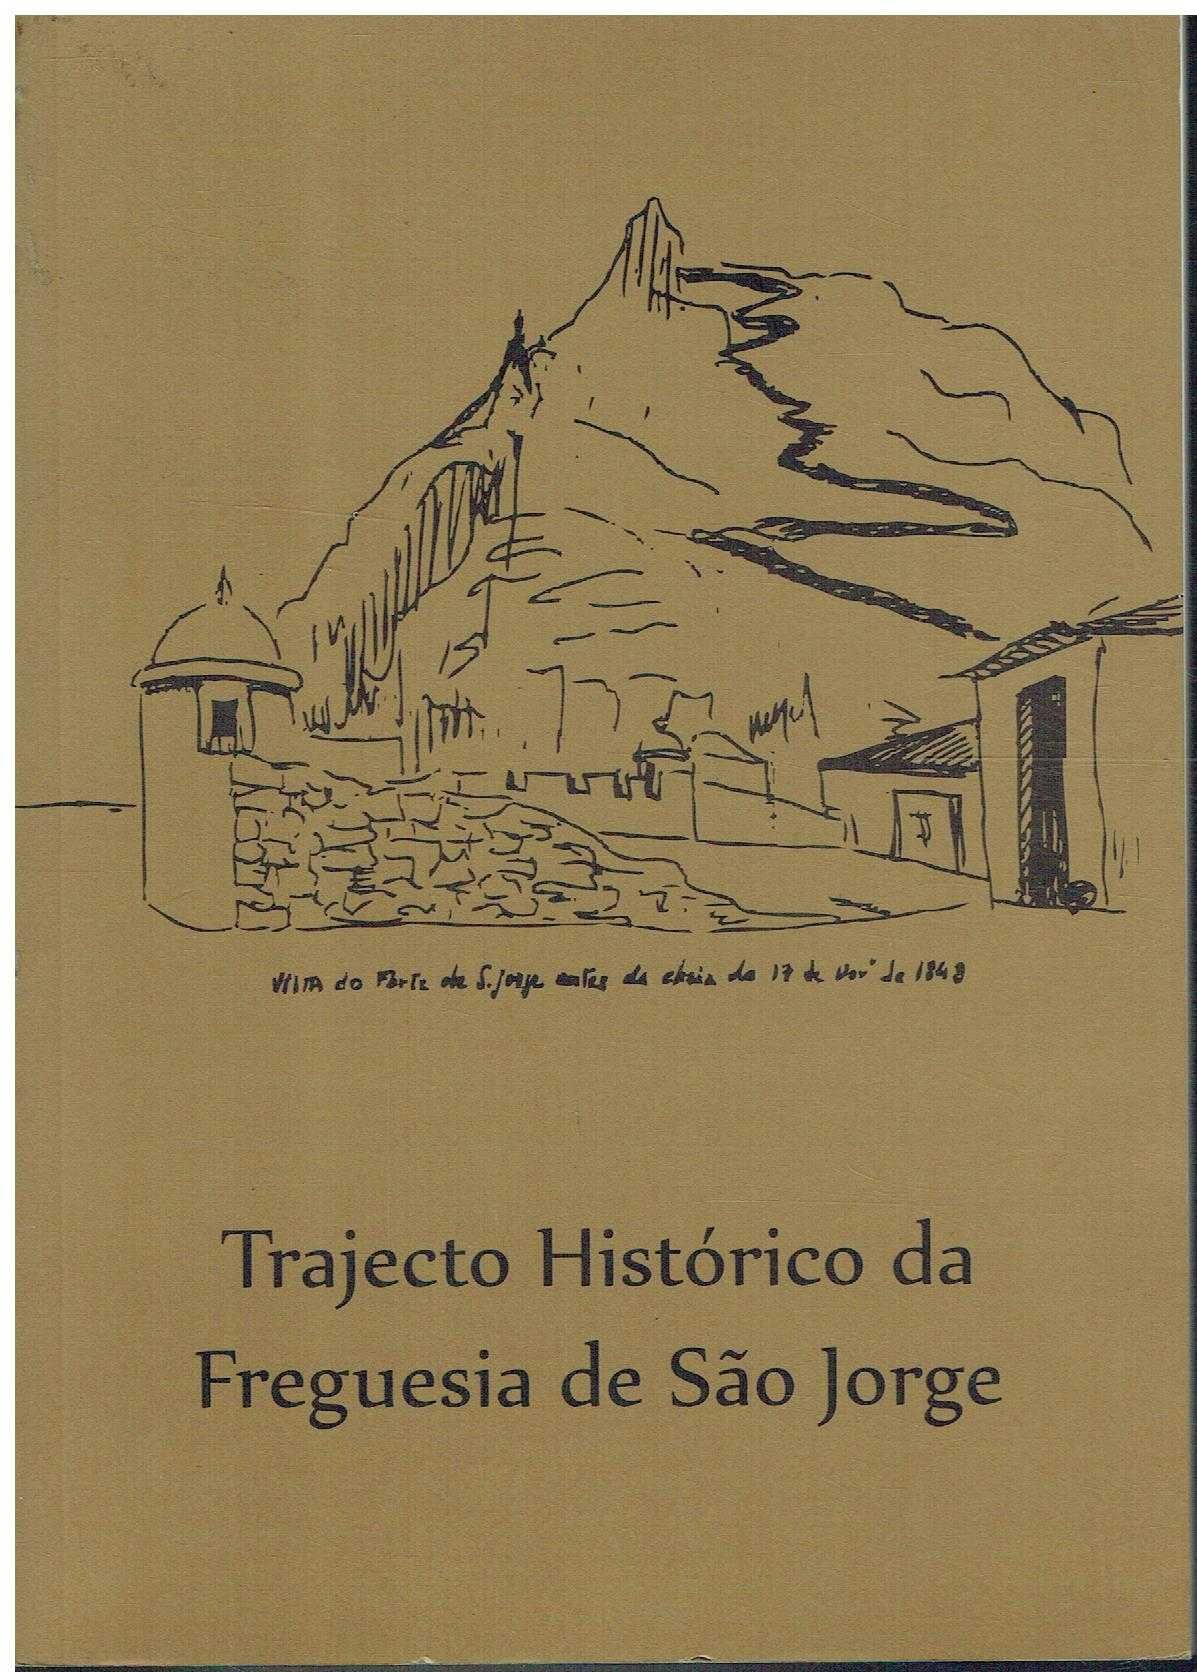 6976
	
Trajecto histórico da Freguesia de São Jorge